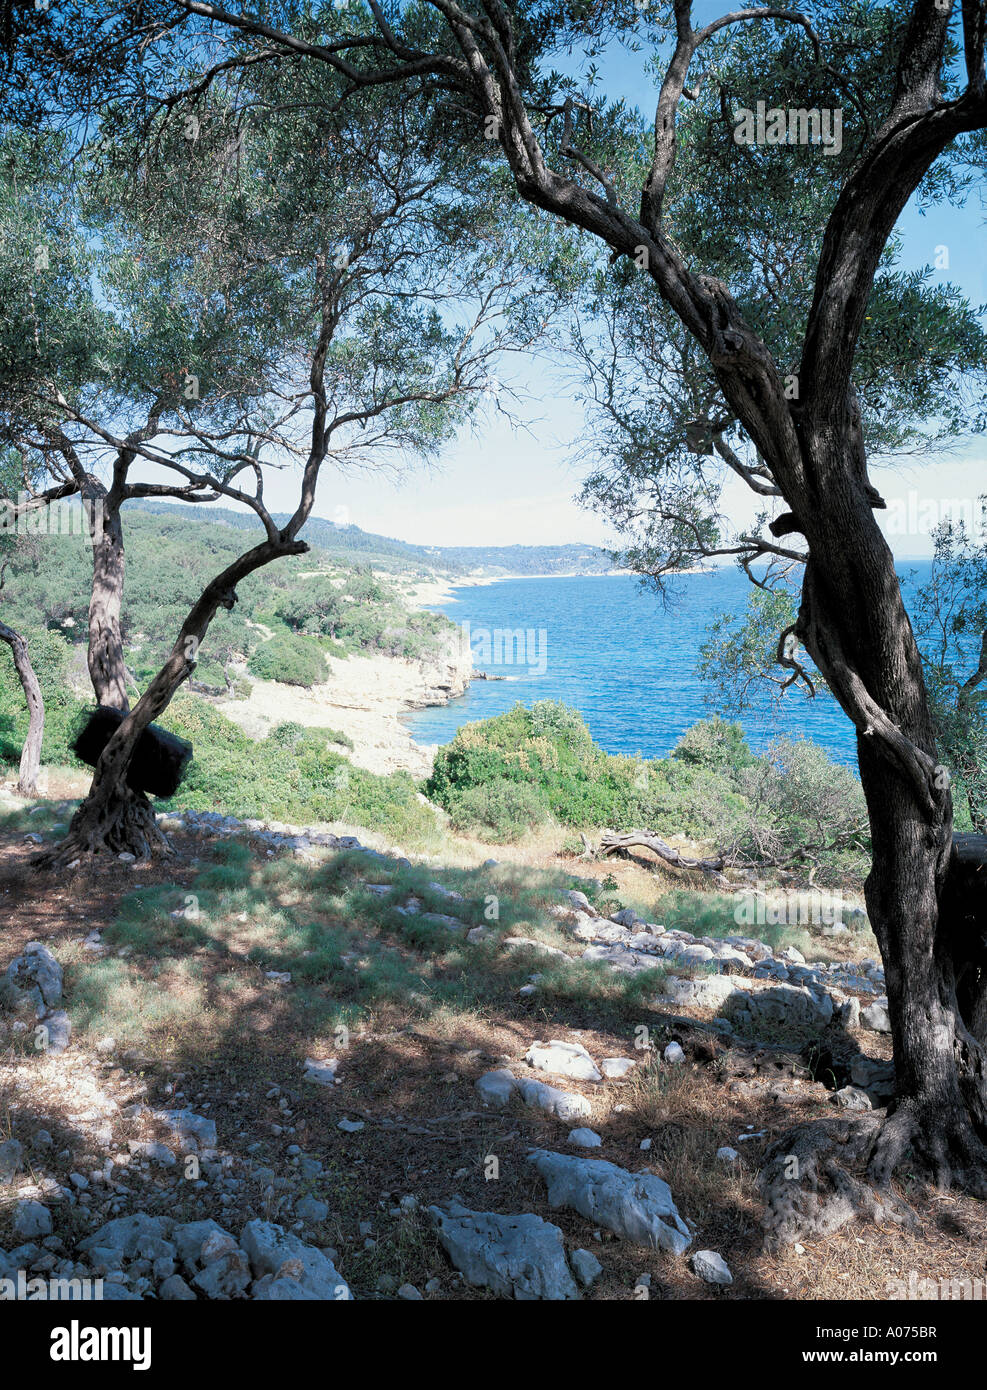 Sur la mer à travers les arbres d'Olive Grèce Paxos Banque D'Images